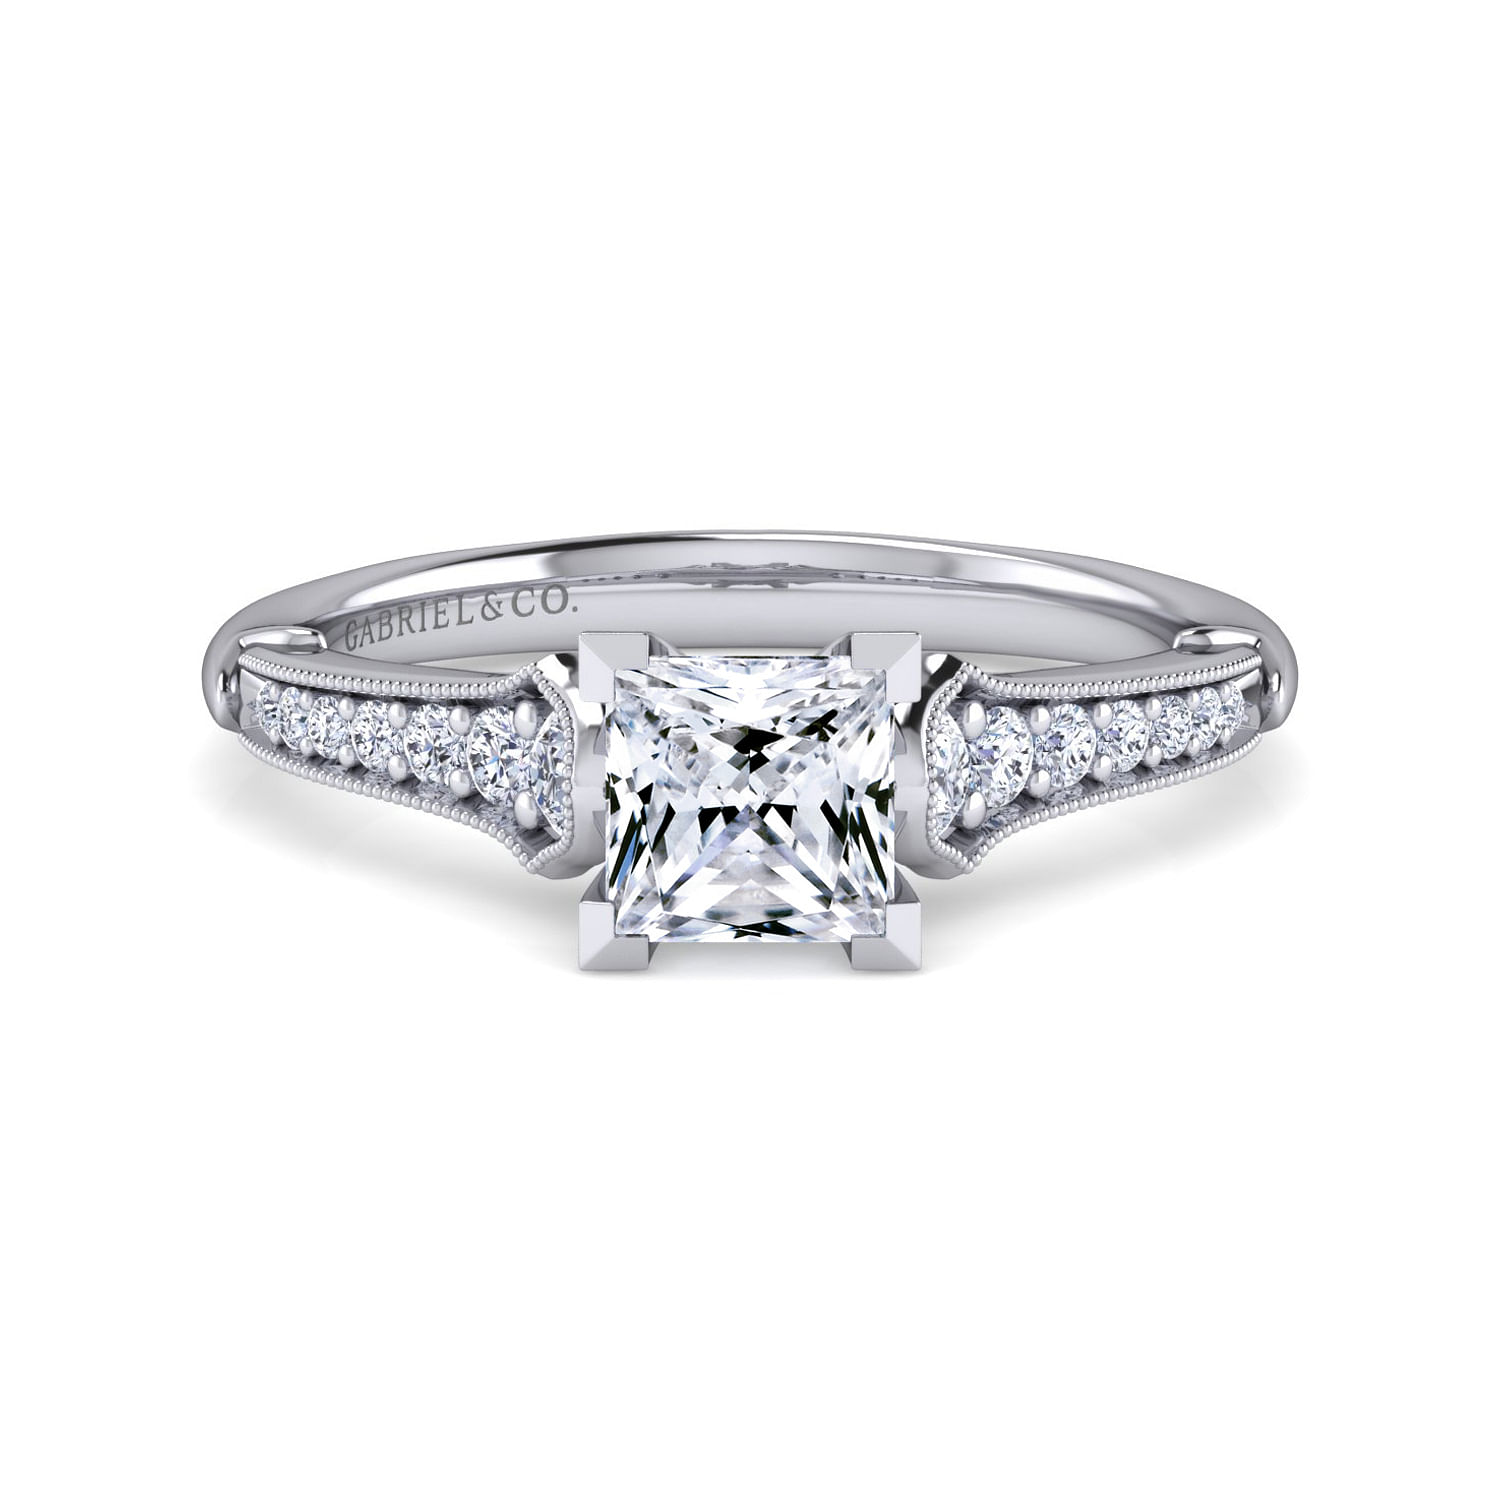 Hollis - 14K White Gold Princess Cut Diamond Engagement Ring